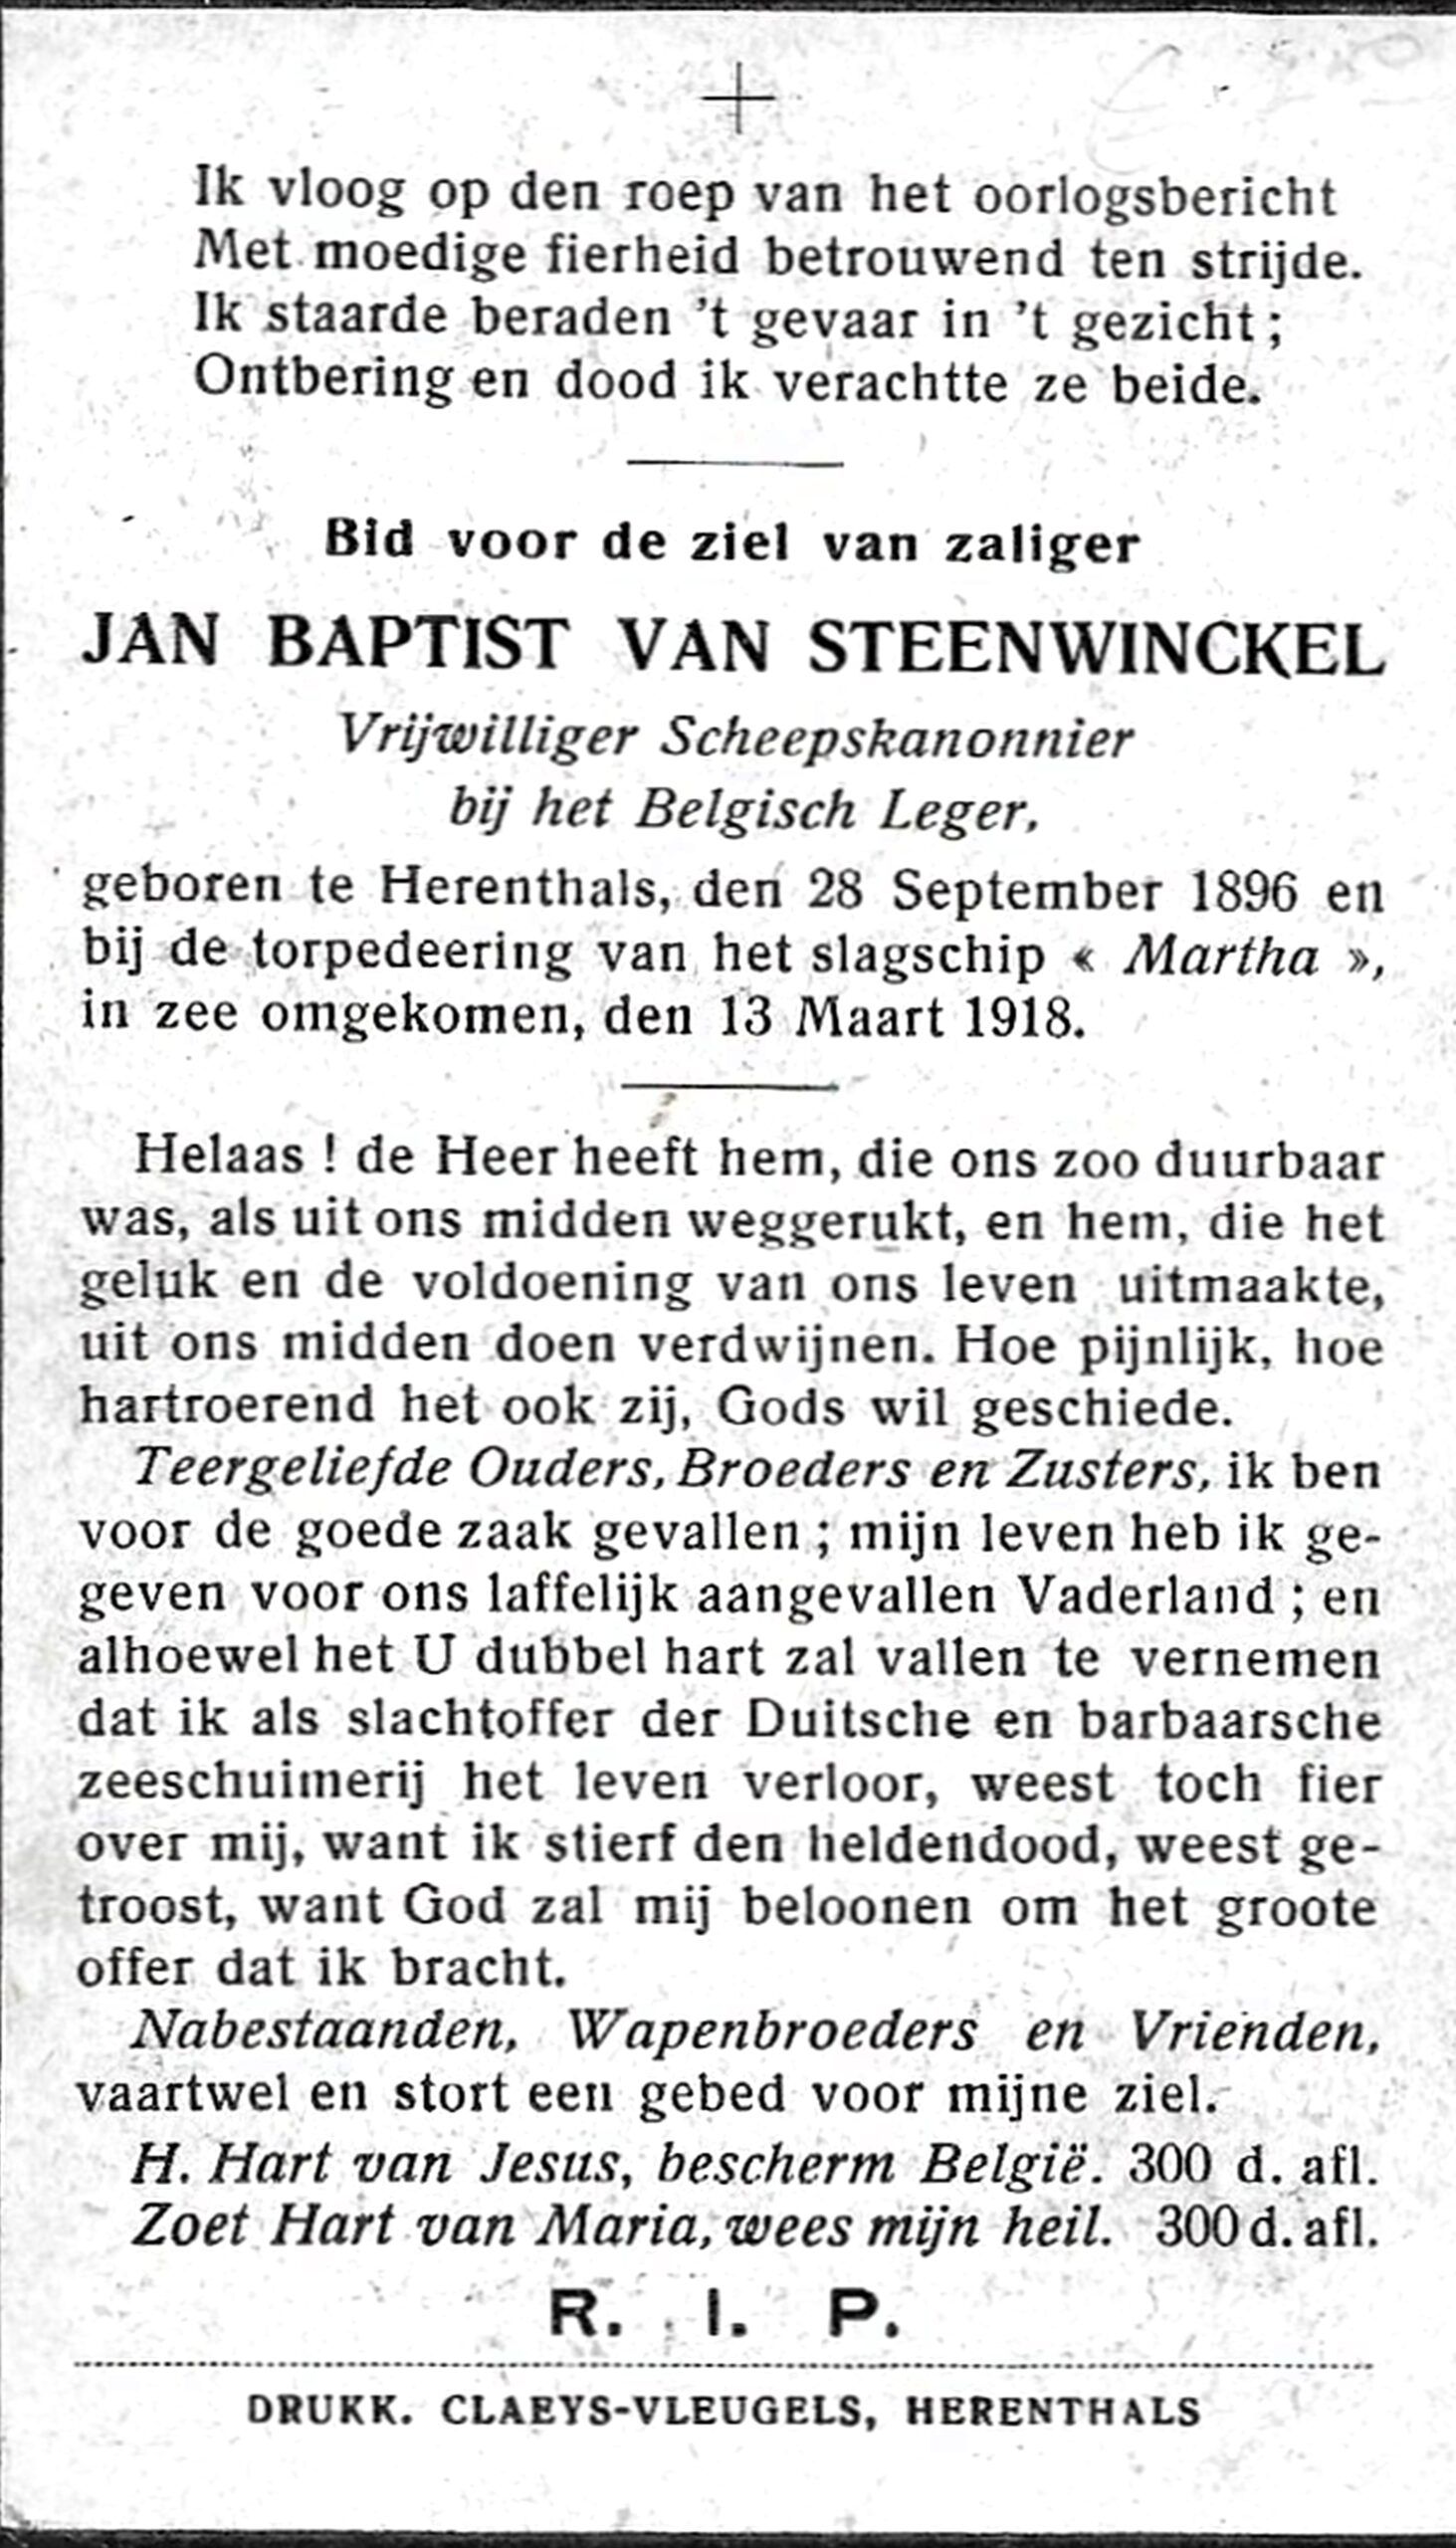 Van Steenwinkel Jean Baptist